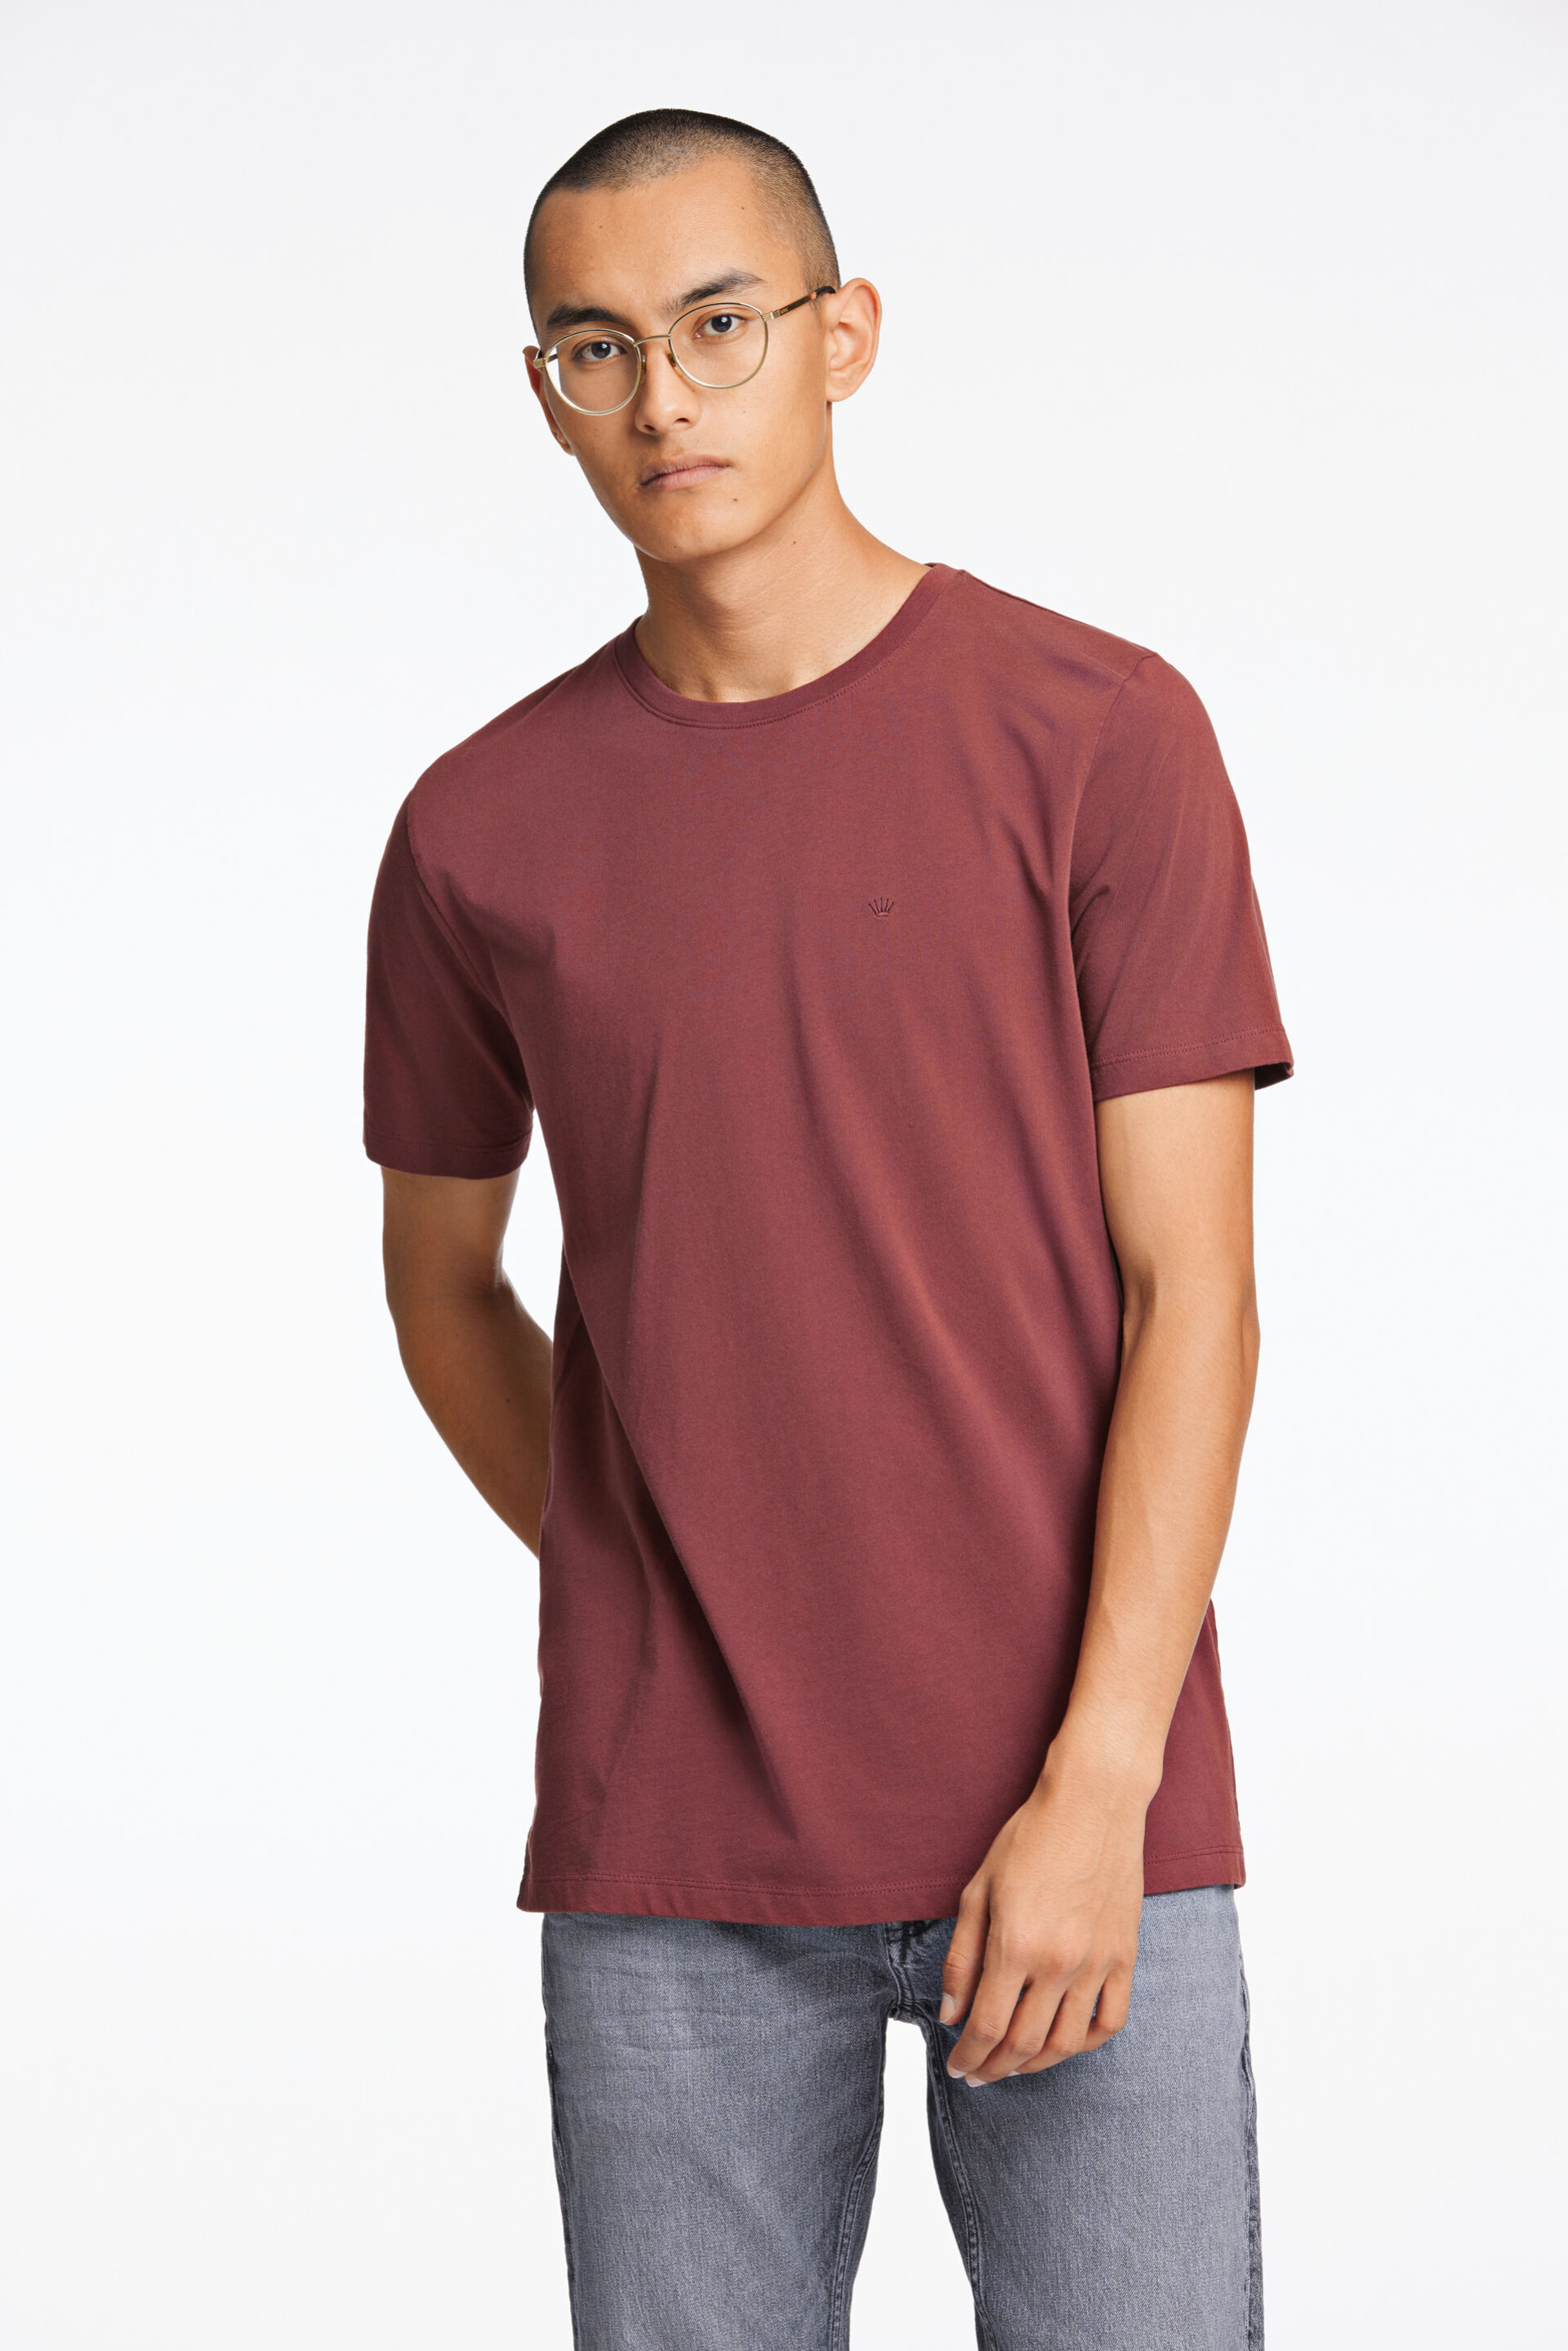 Junk de Luxe  T-shirt Rød 60-40005